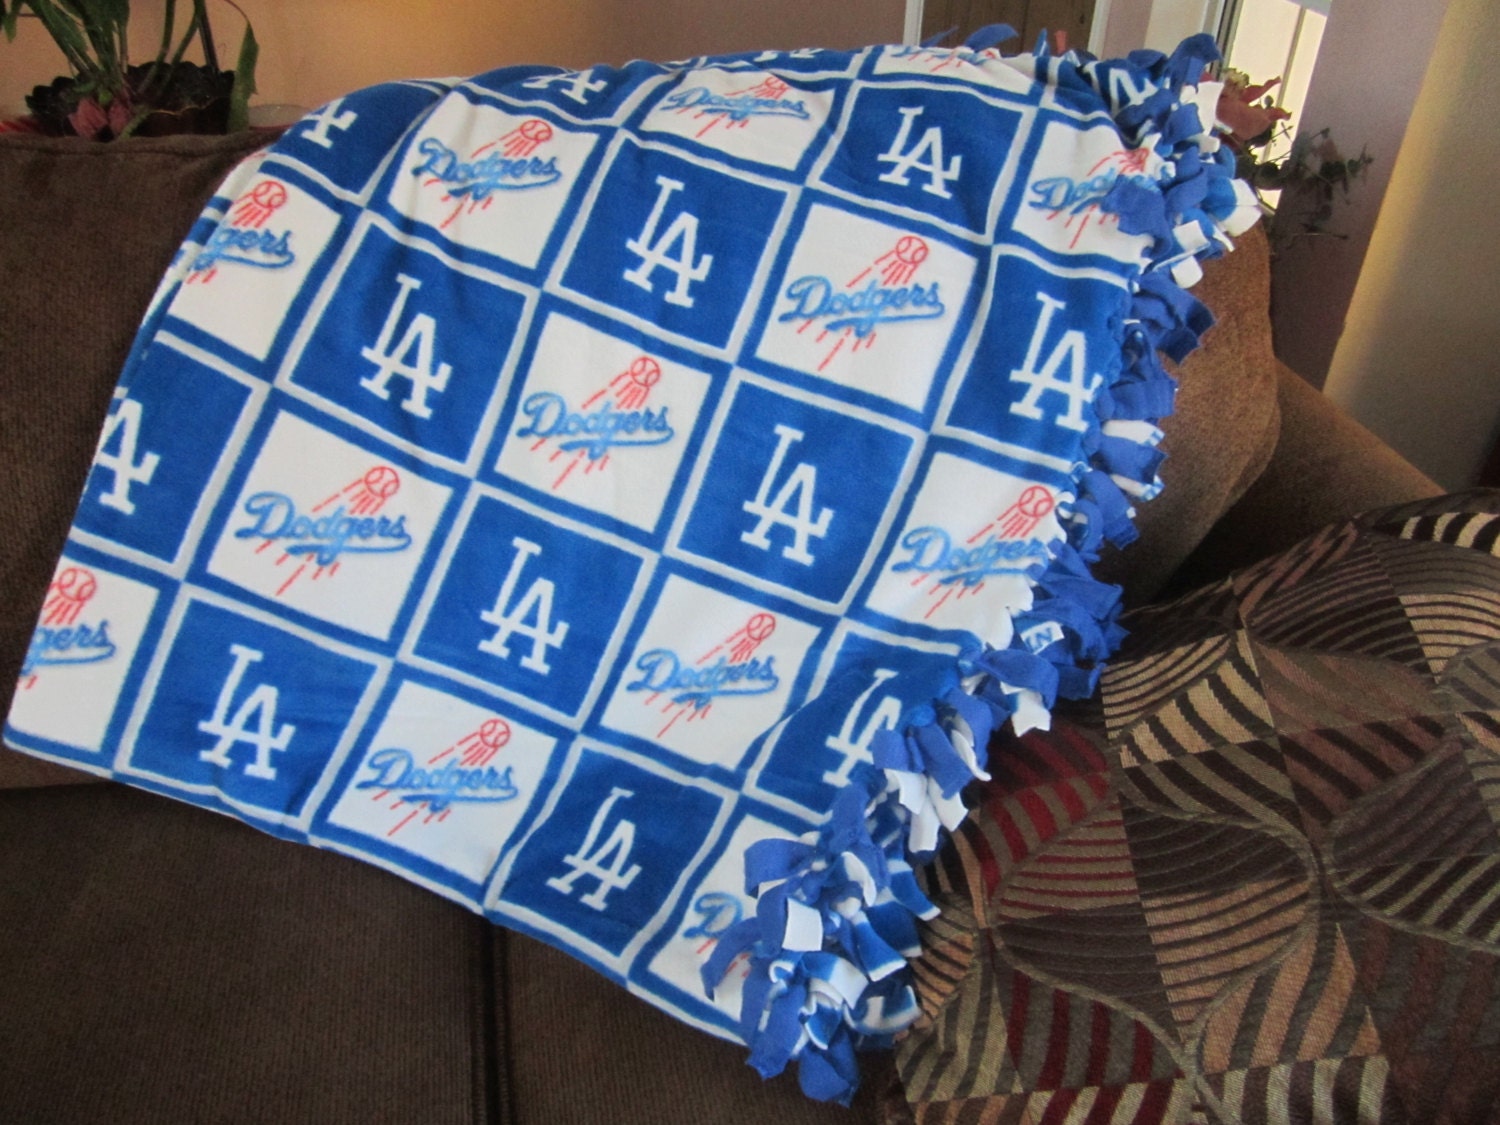 April 27, 2016 Los Angeles Dodgers - Fleece Blanket ...